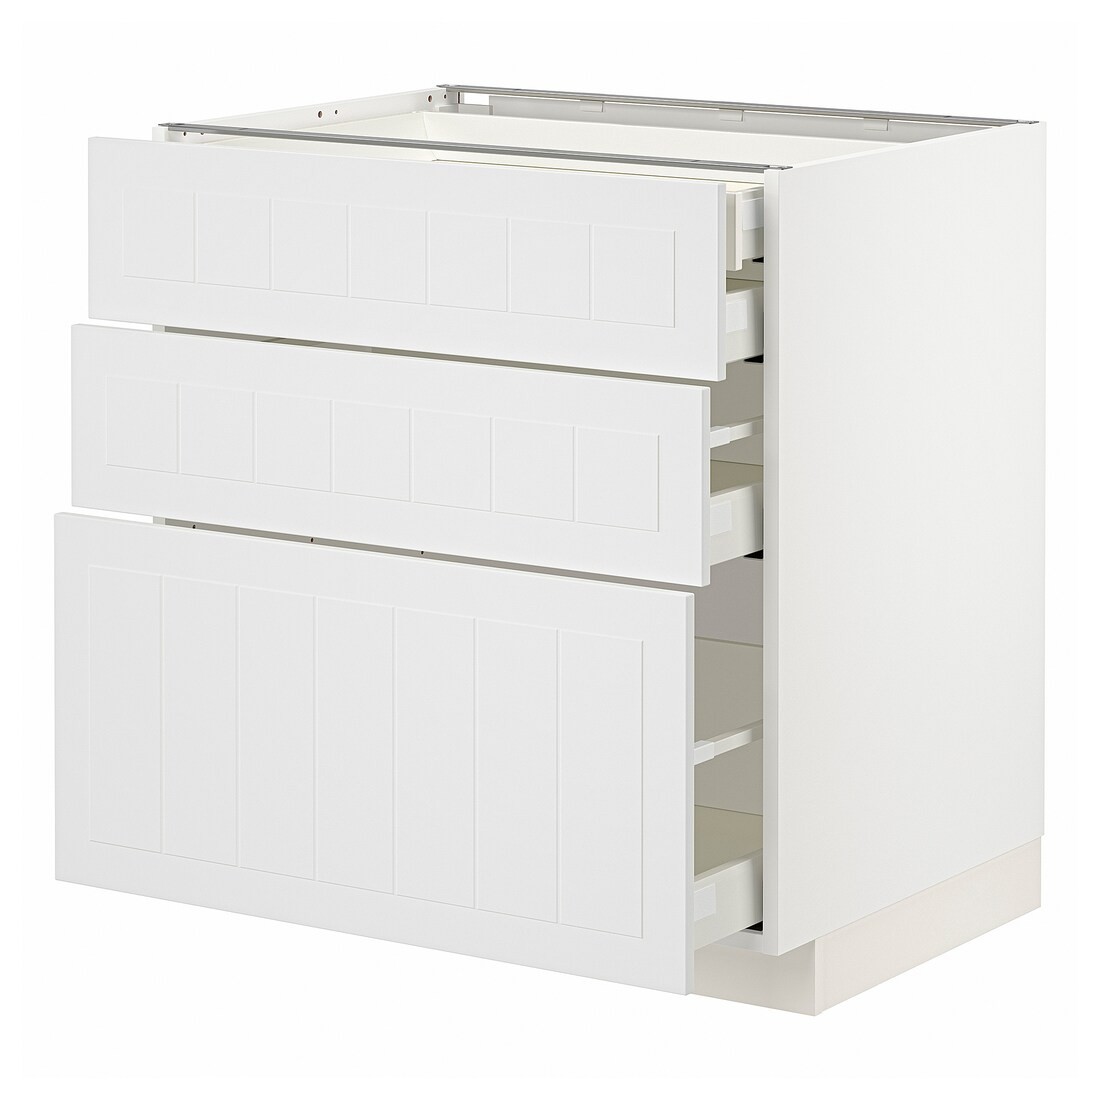 IKEA METOD МЕТОД / MAXIMERA МАКСИМЕРА Напольный шкаф с ящиками, белый / Stensund белый, 80x60 см 09409462 094.094.62